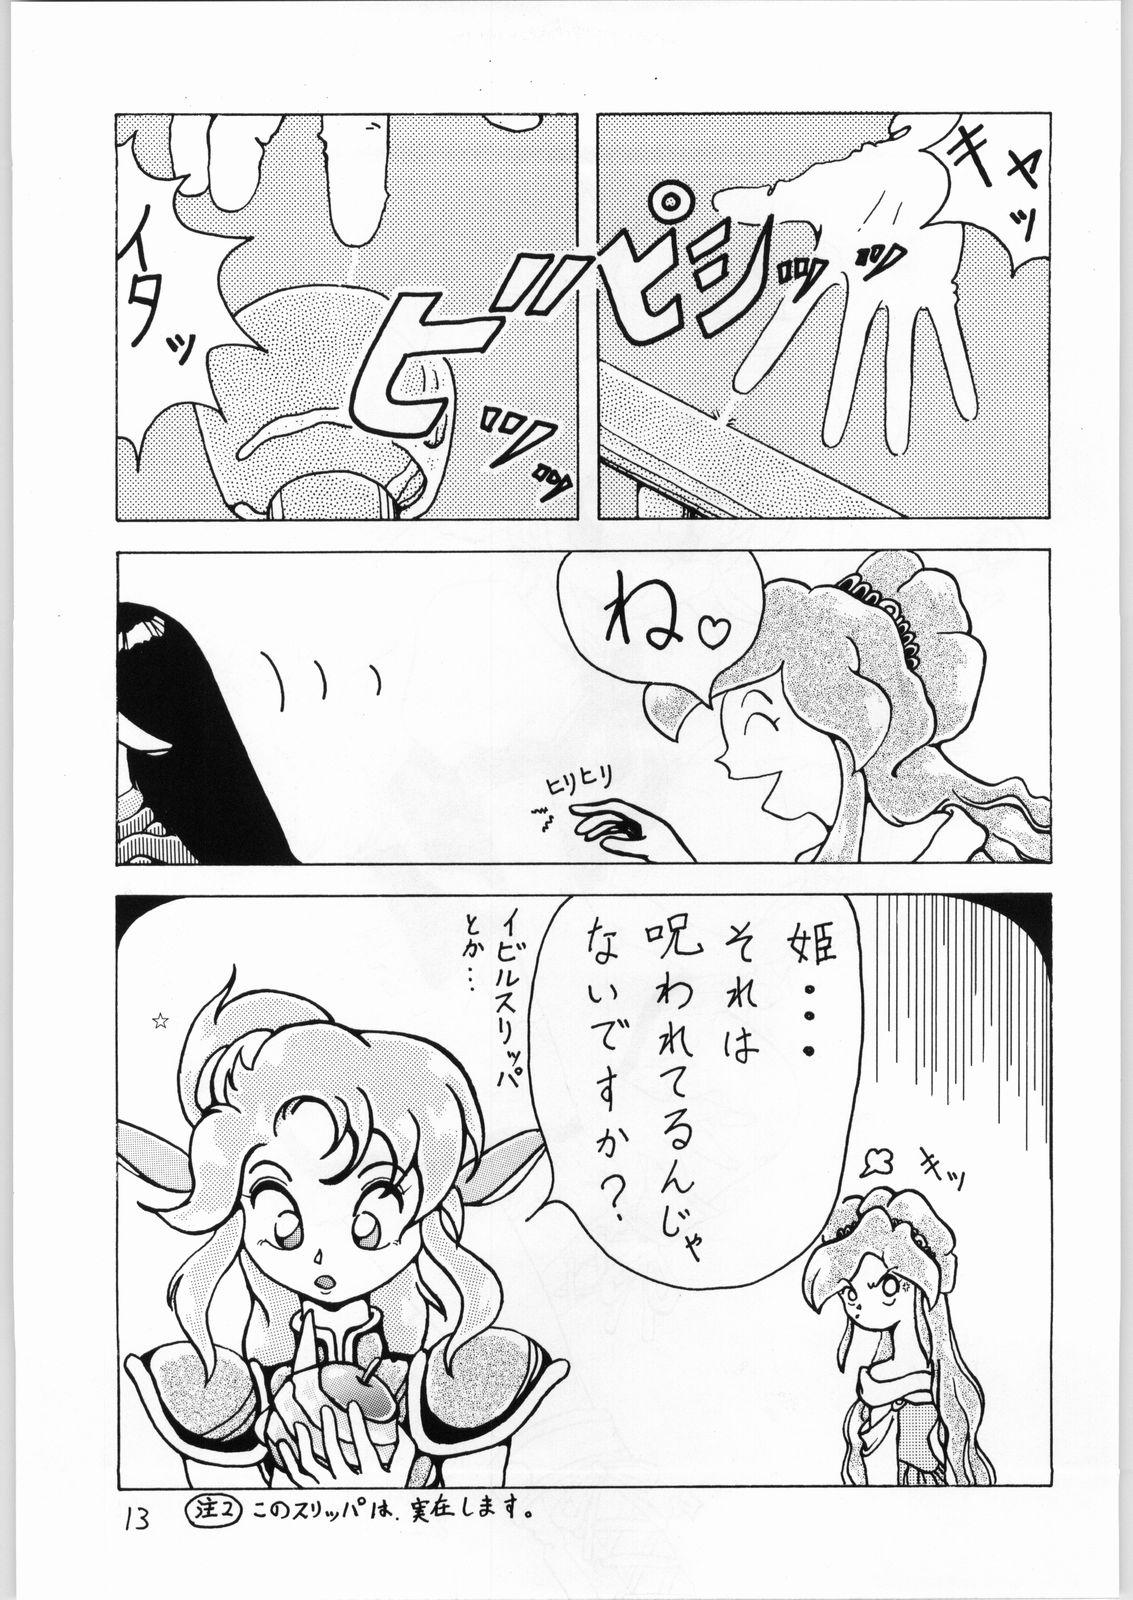 Roughsex Dance of Princess 3 - Sailor moon Tenchi muyo Akazukin cha cha Minky momo Ng knight lamune and 40 Porno - Page 12